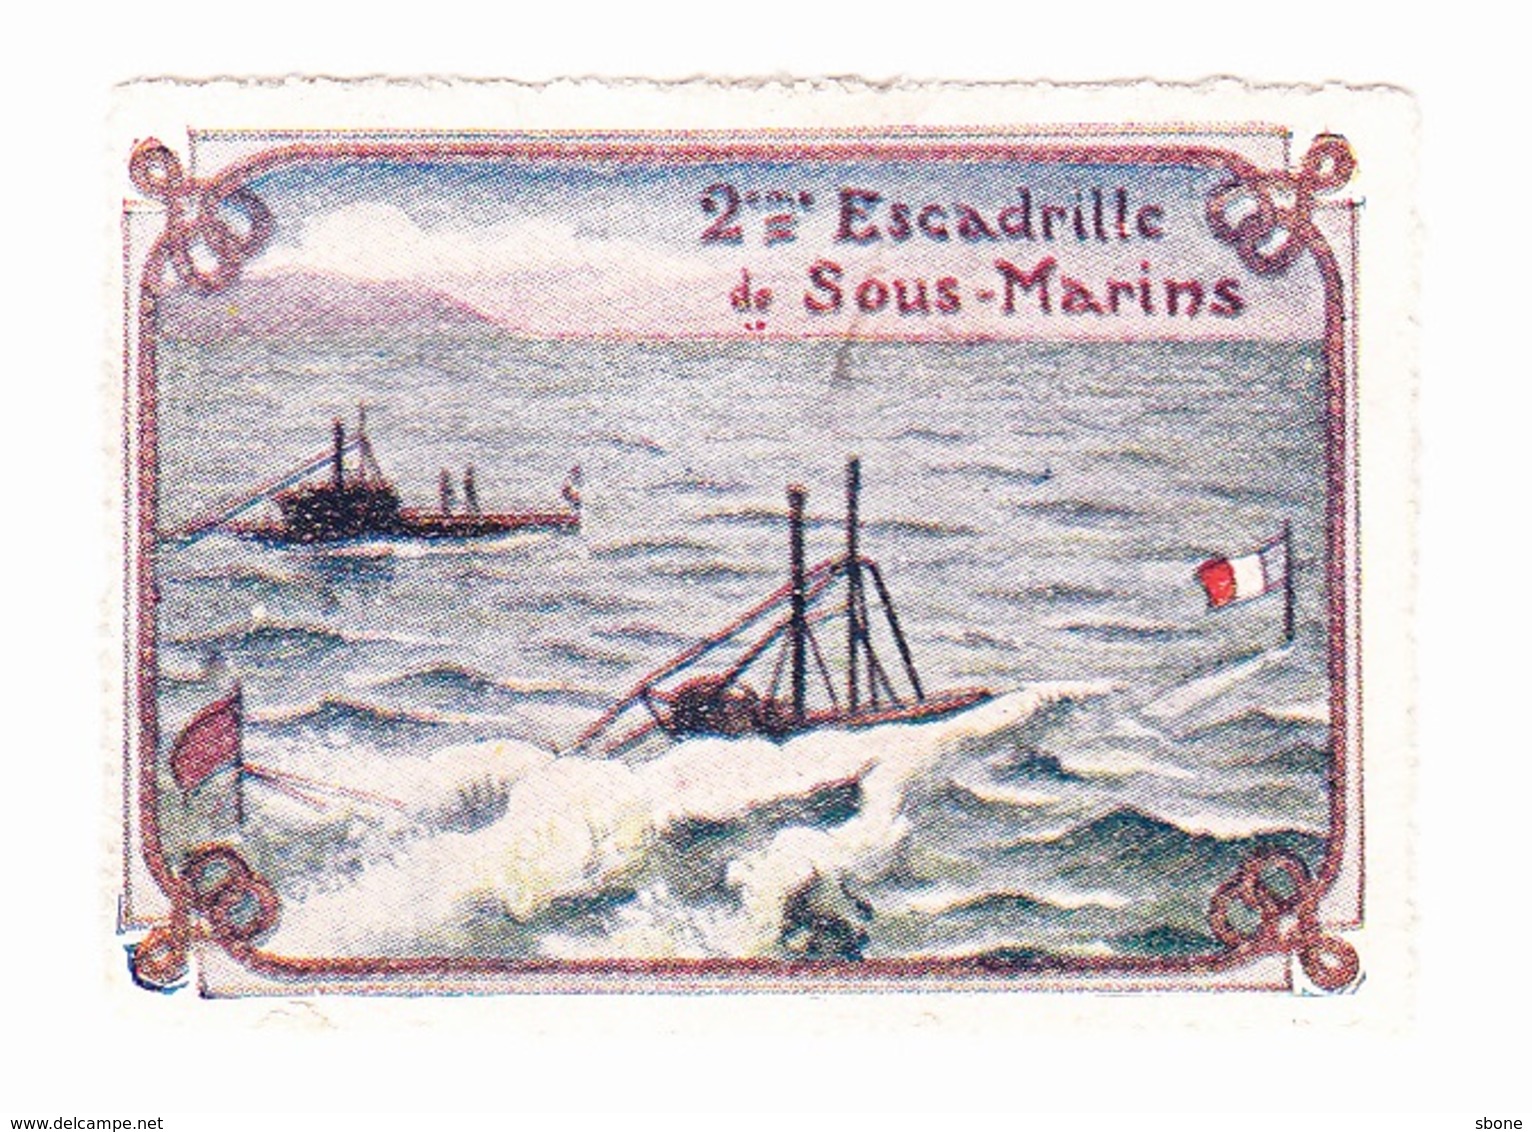 Vignette Militaire Delandre - 2ème Escadrille De Sous Marins - Military Heritage